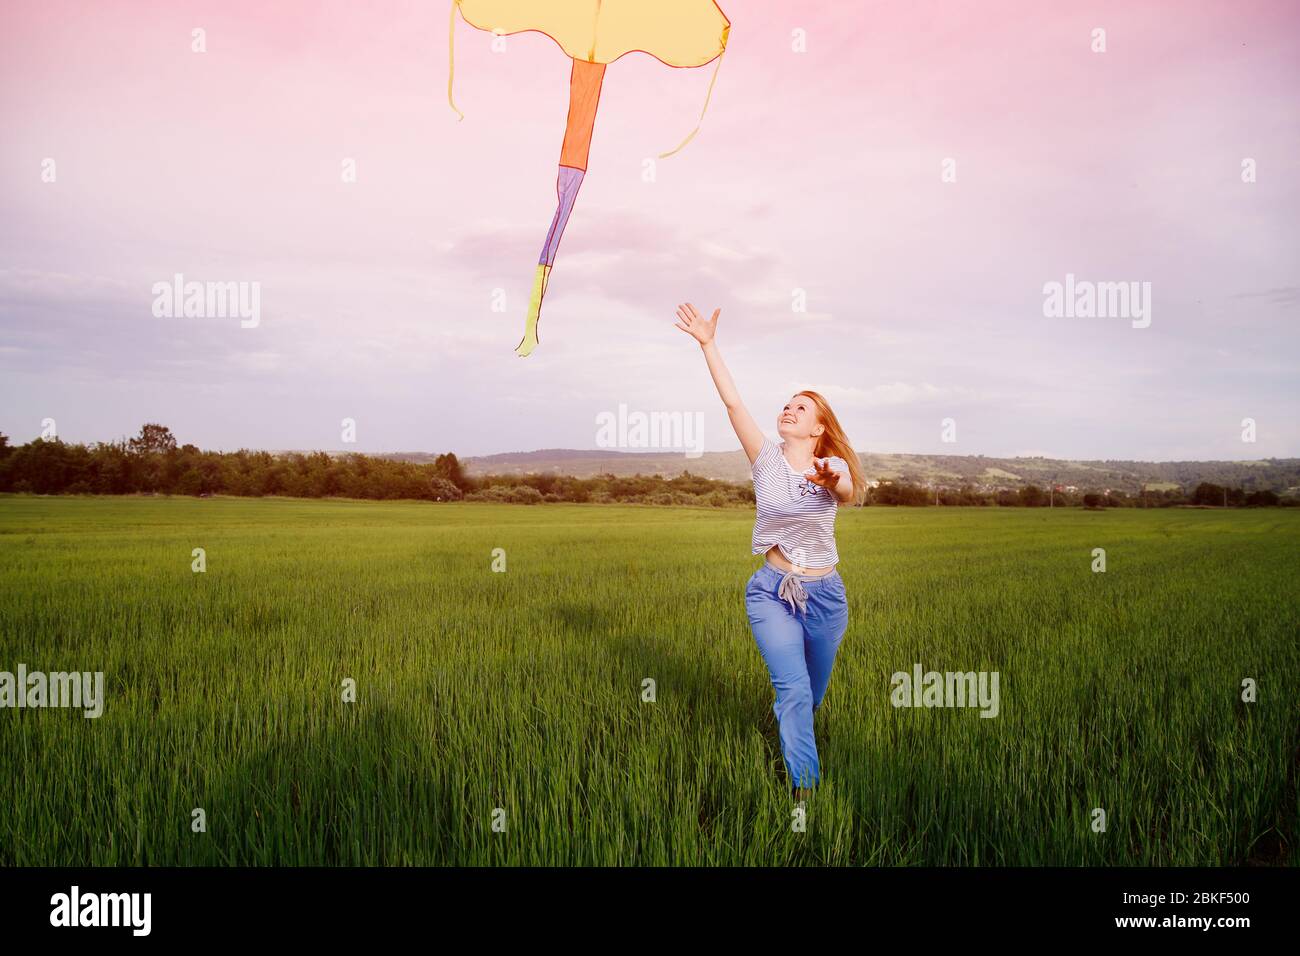 Una joven corre con cometa a través de un campo limpio al atardecer, el viento sopla su cabello. Concepto de libertad de grilletes, juicios. Foto de stock